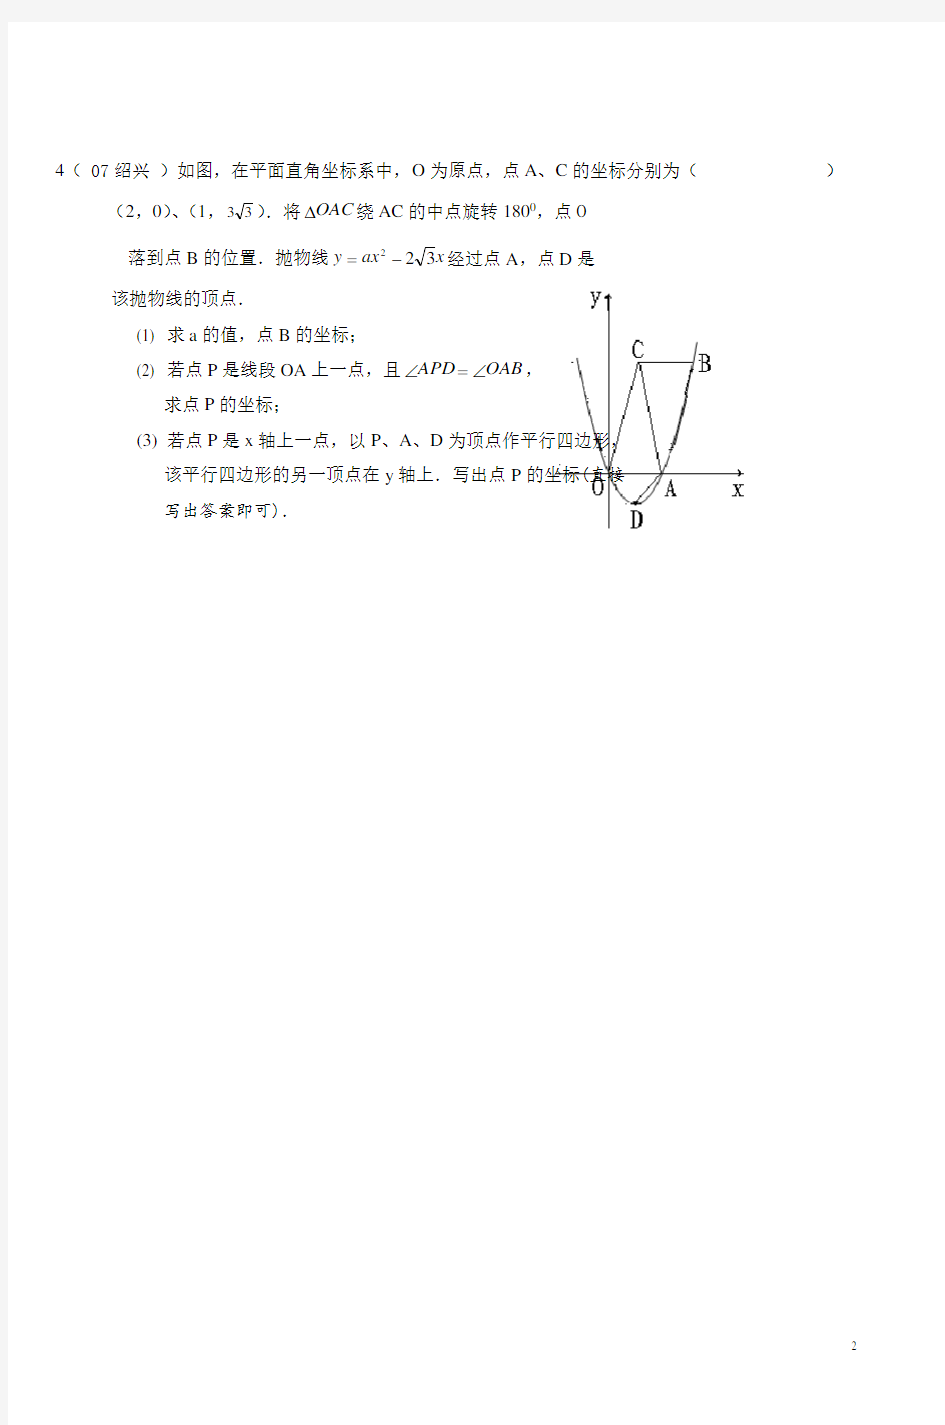 寒假初三数学讲义第四讲-函数问题 资料( 一 )